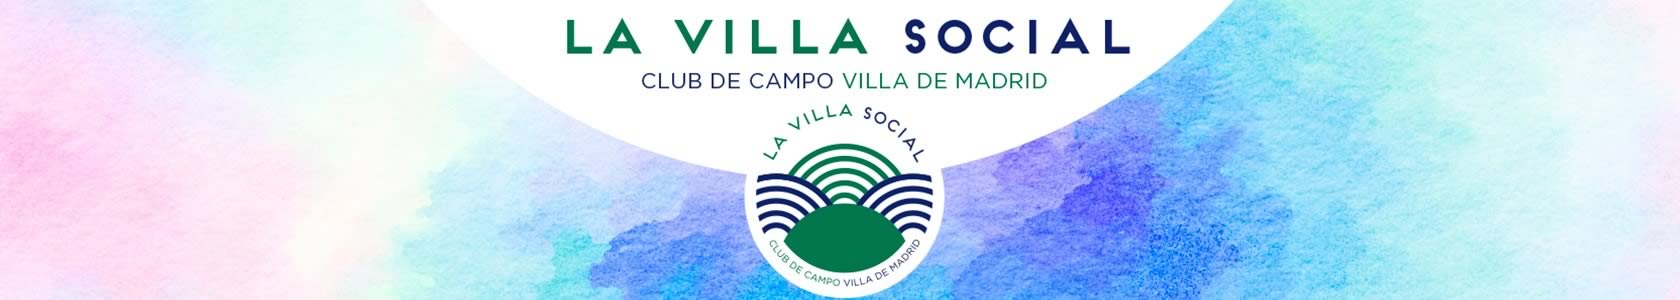 La Villa Social. Club de Campo Villa de Madrid